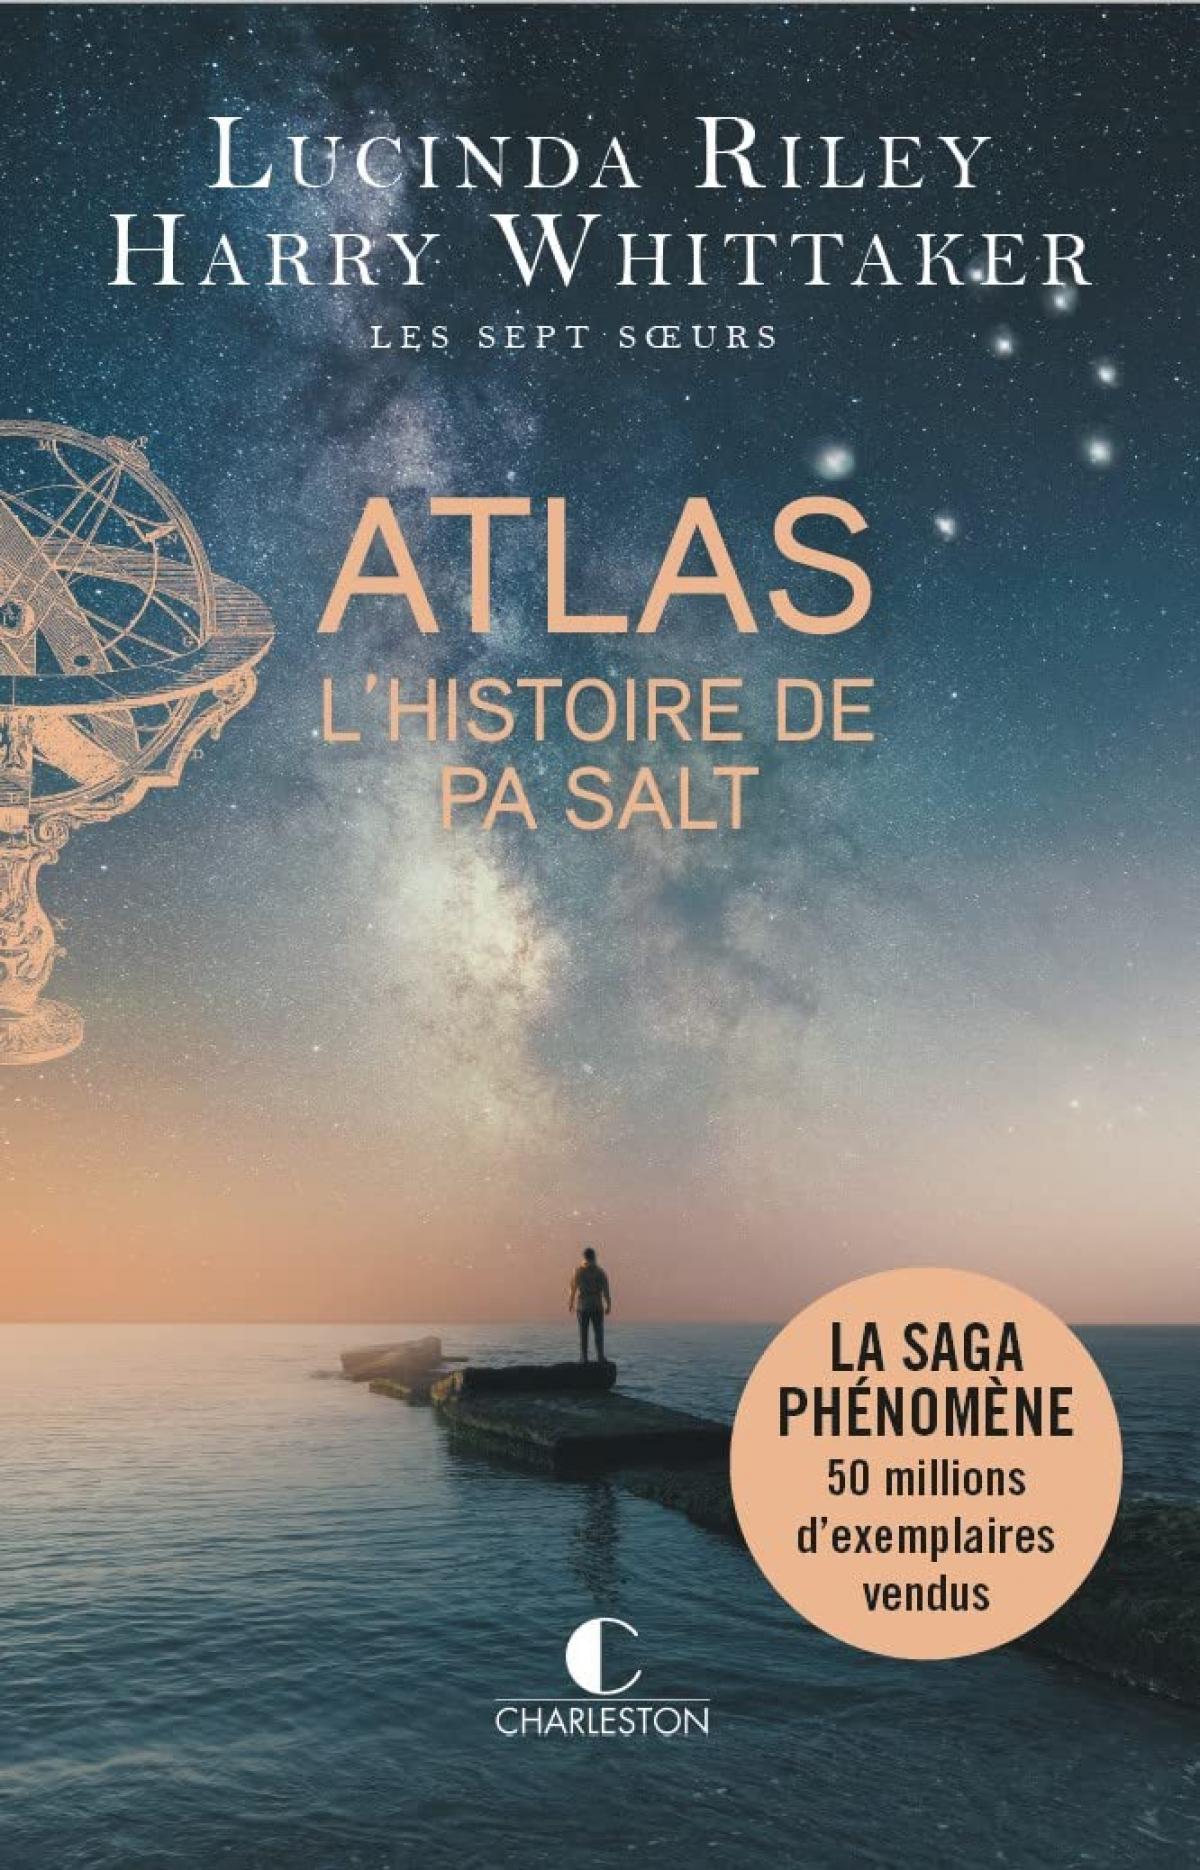 “Atlas, L'histoire de Pa Salt” de Lucinda Riley et Harry Whittaker